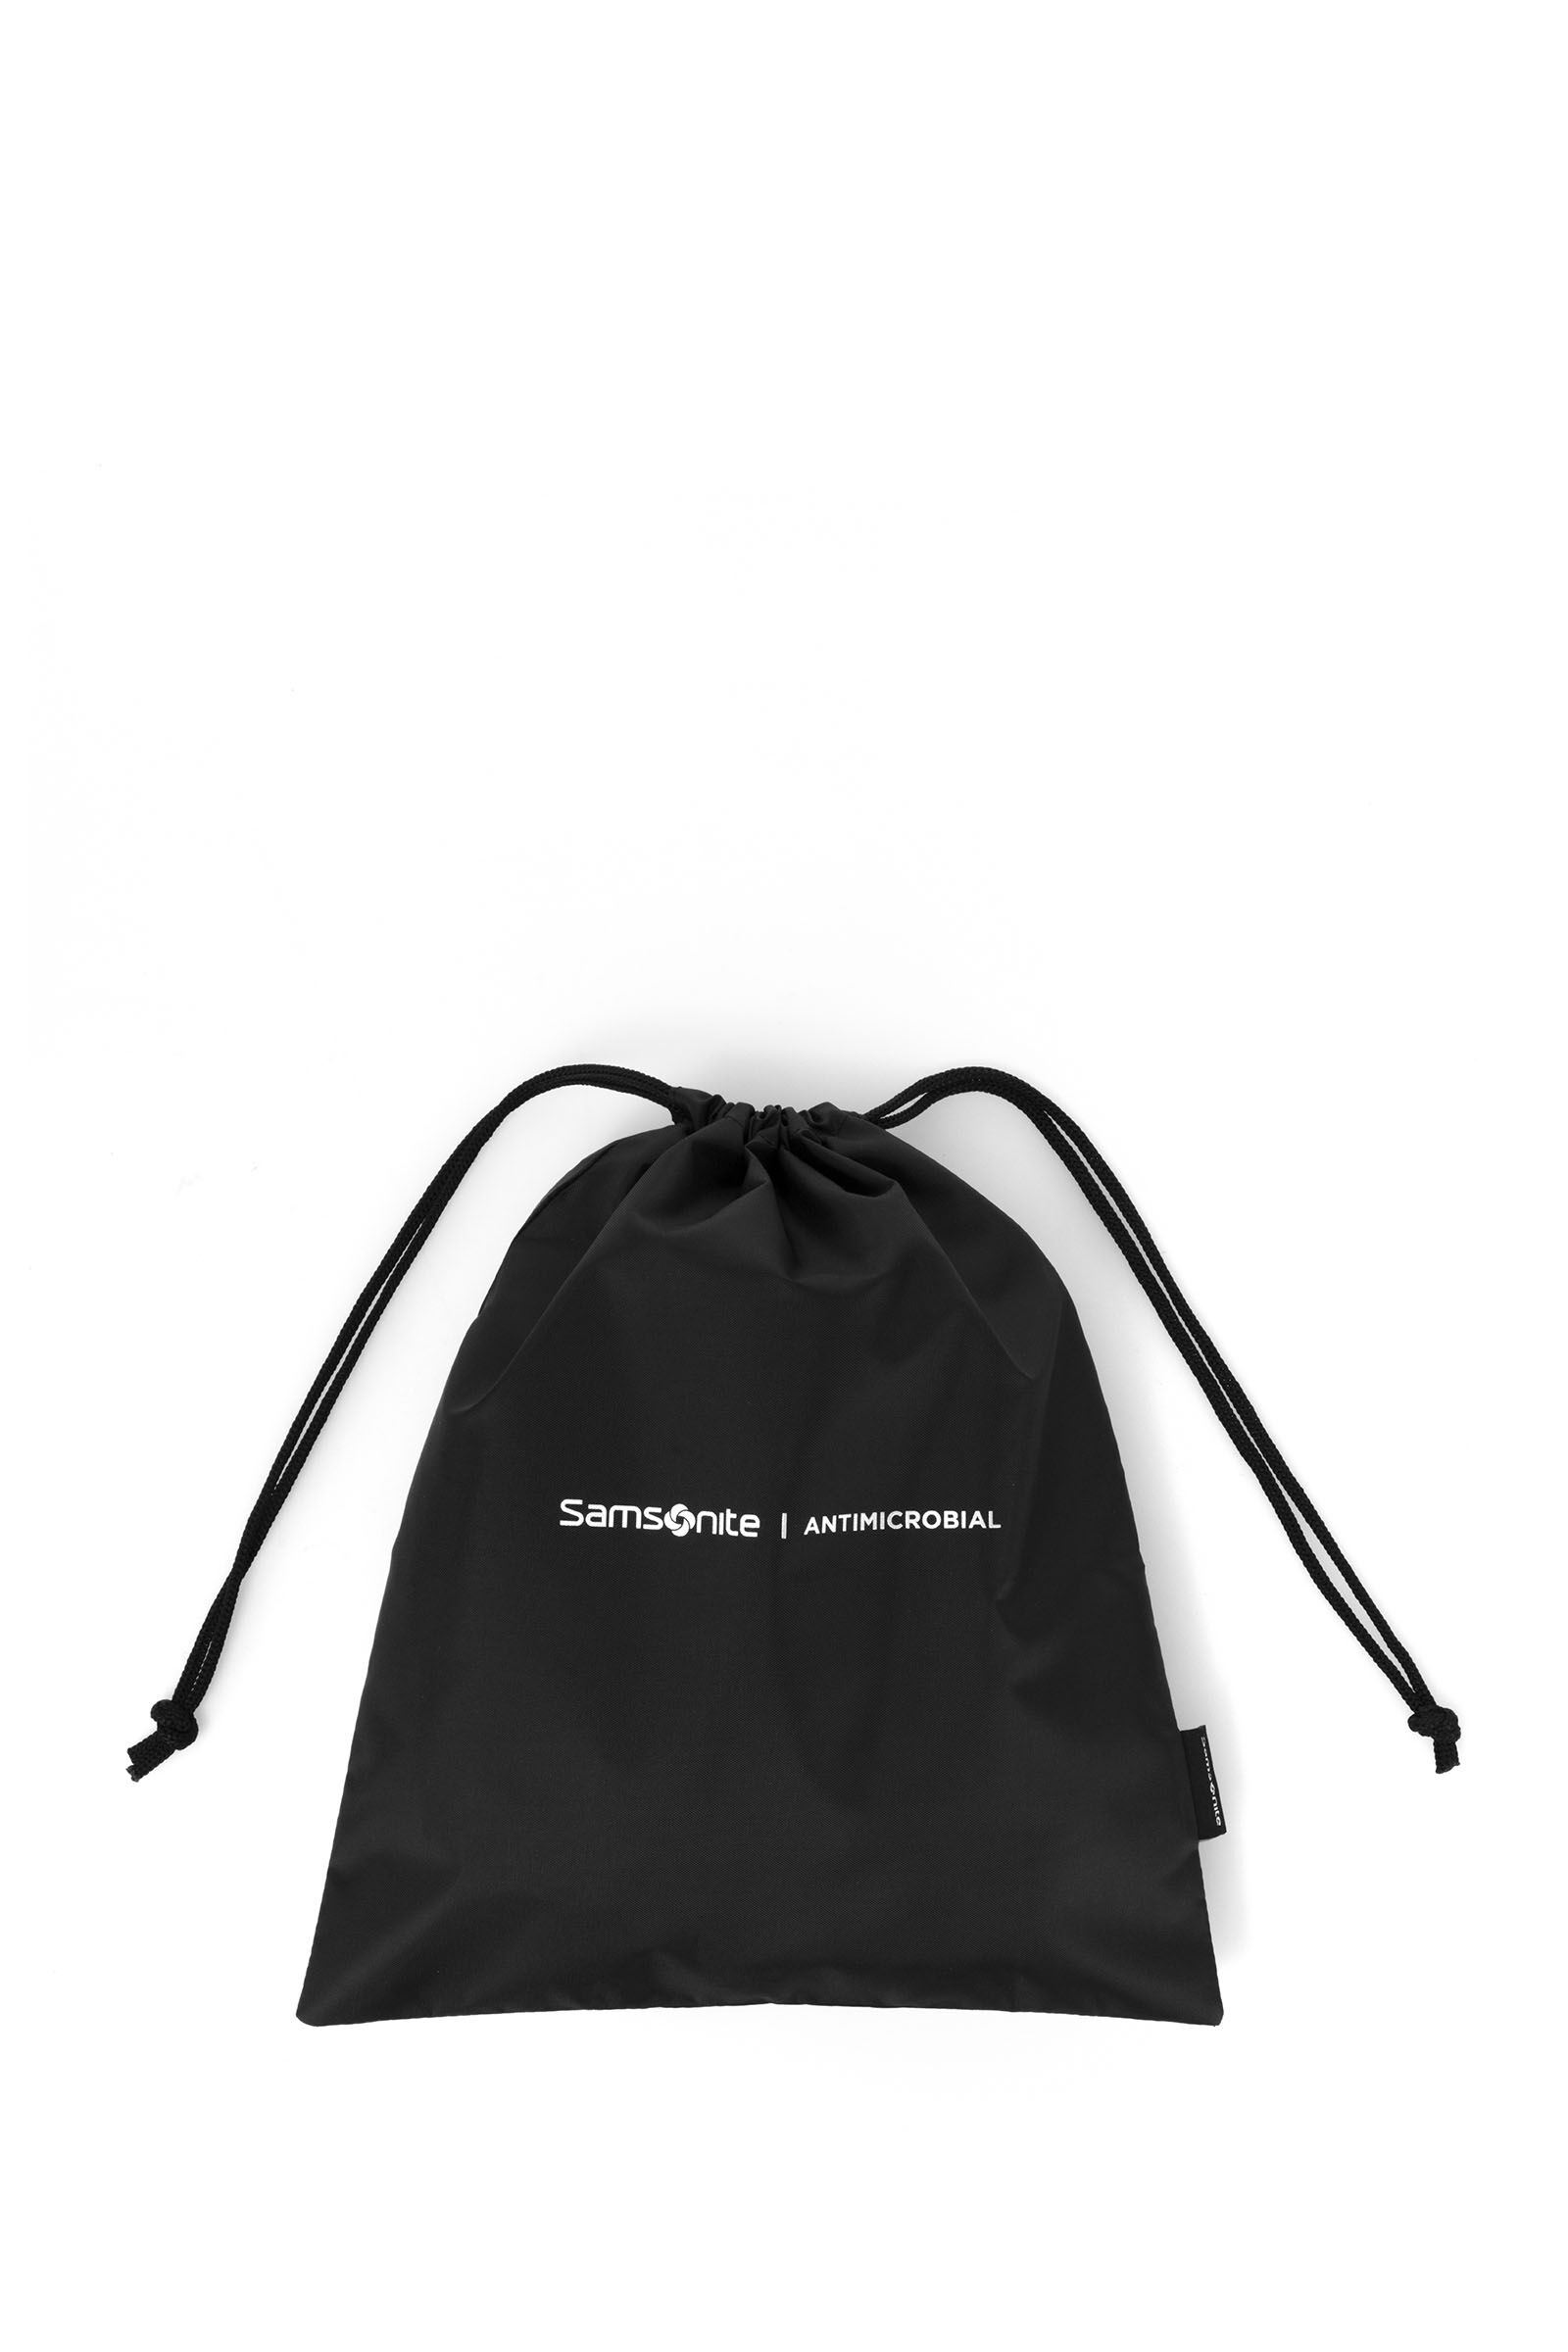 Samsonite Foldaway Medium Duffel Bag Black  Amazonin Fashion